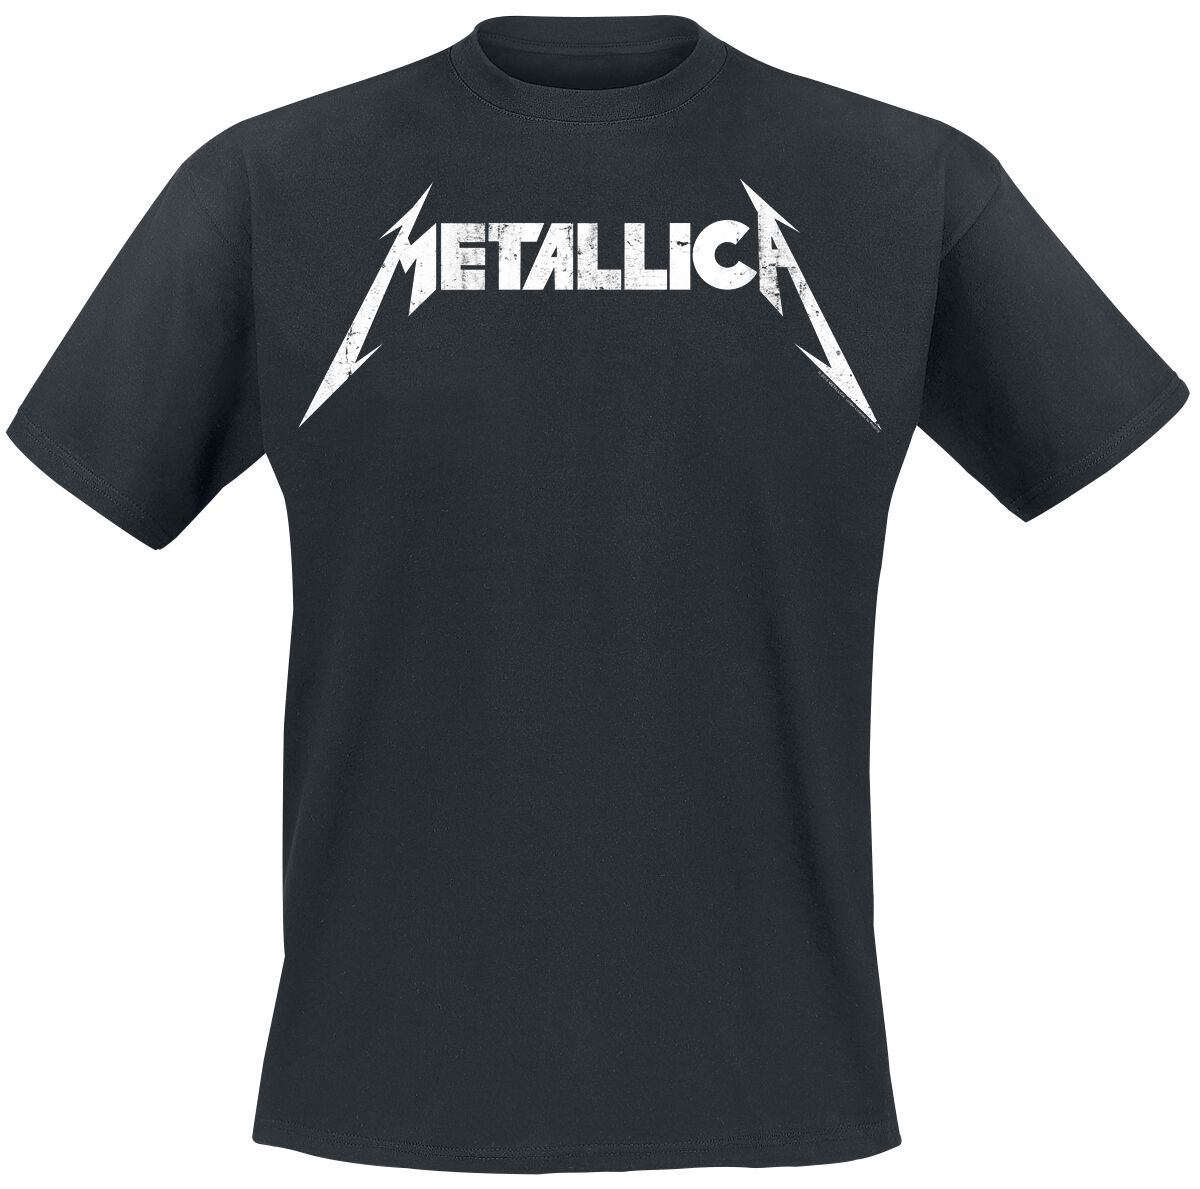 Metallica T-Shirt - Textured Logo - S bis 5XL - für Männer - Größe 5XL - schwarz  - Lizenziertes Merchandise!